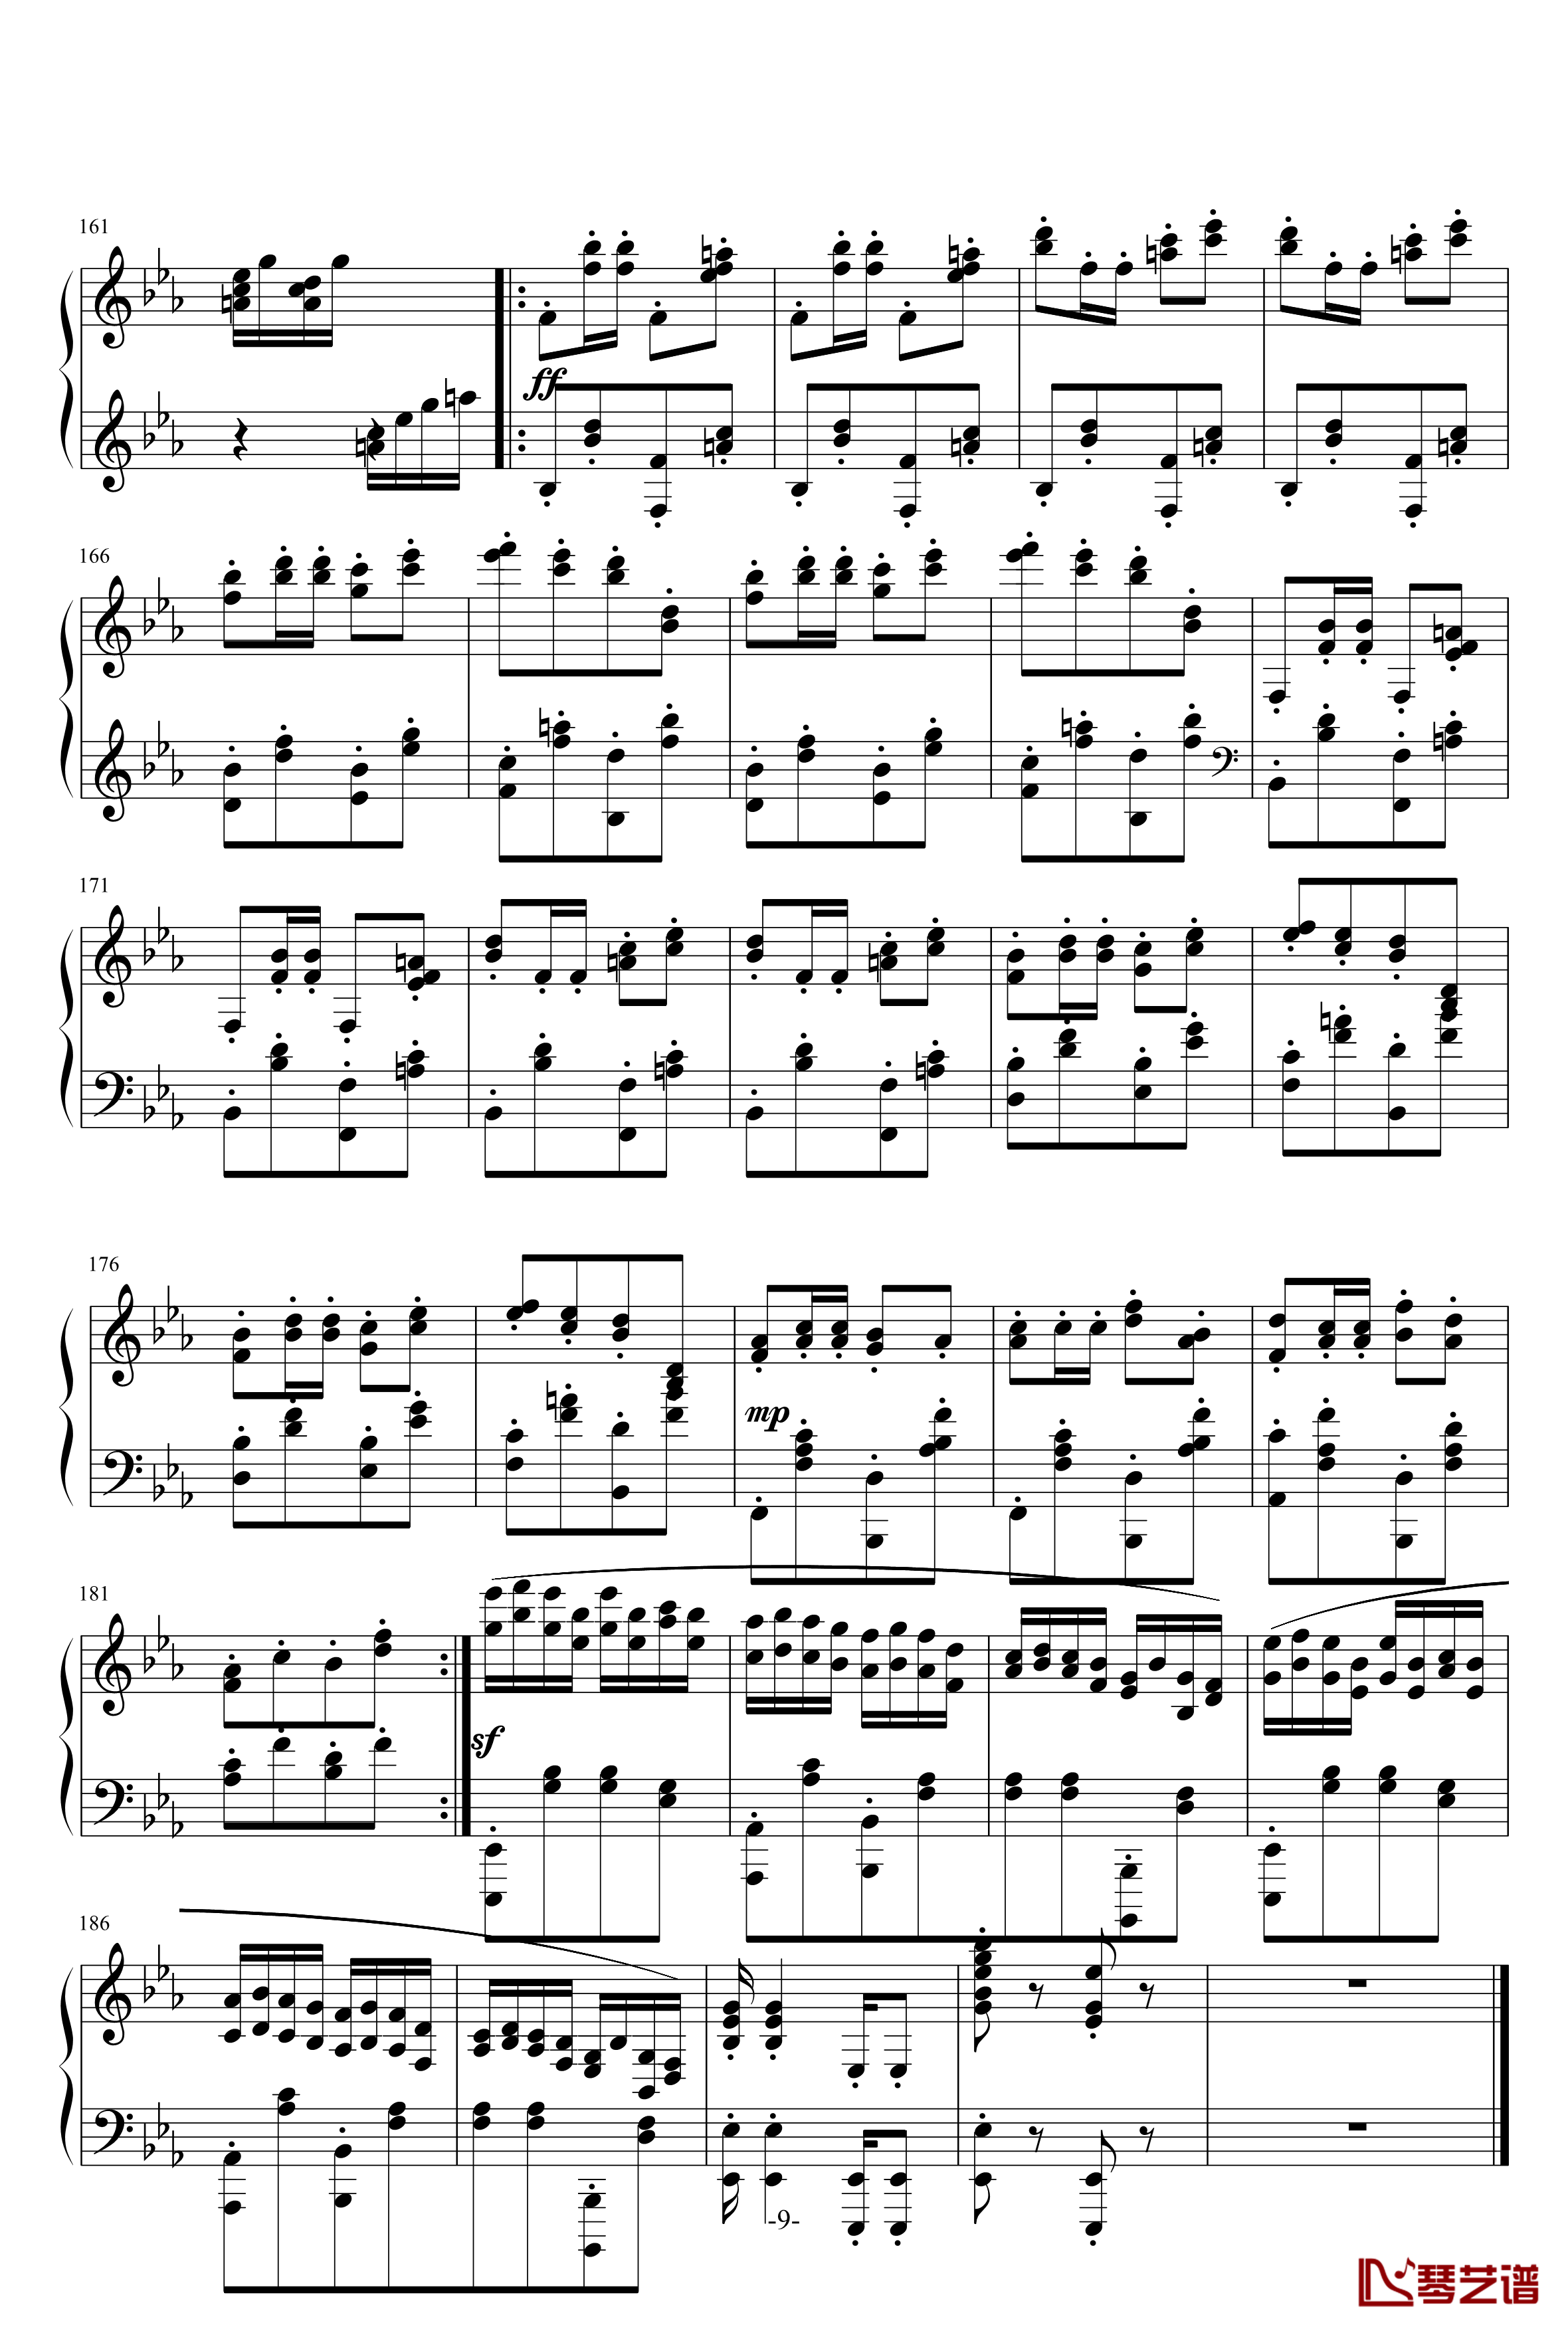 小温狂想曲 3钢琴谱—具有匈牙利狂想曲风格的一曲。—我的代表作-一个球